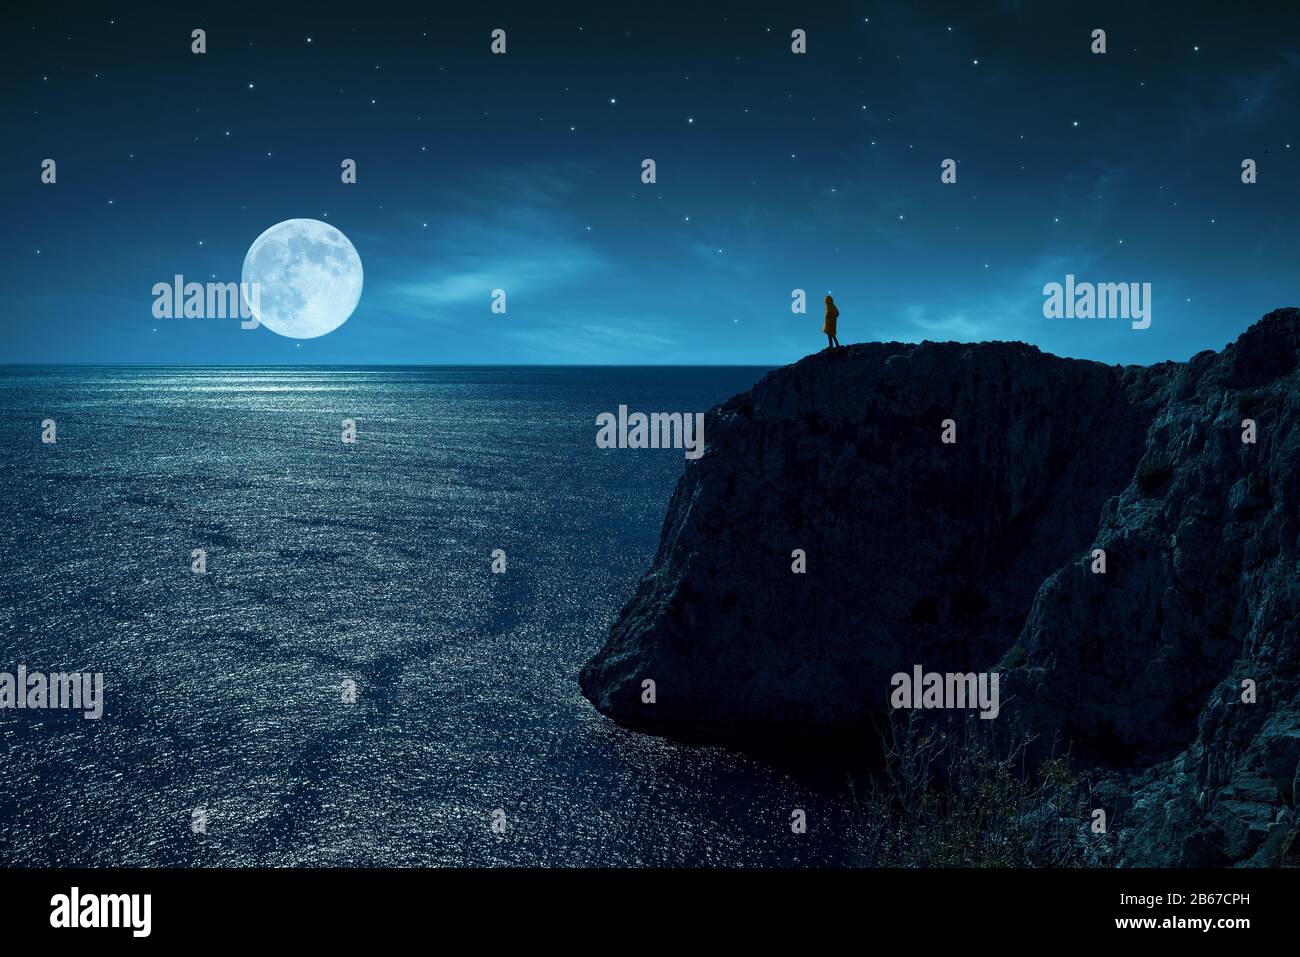 La persona è in piedi nel bordo di una scogliera contro il mare e la luna piena, sotto le stelle e la luce della luna Foto Stock